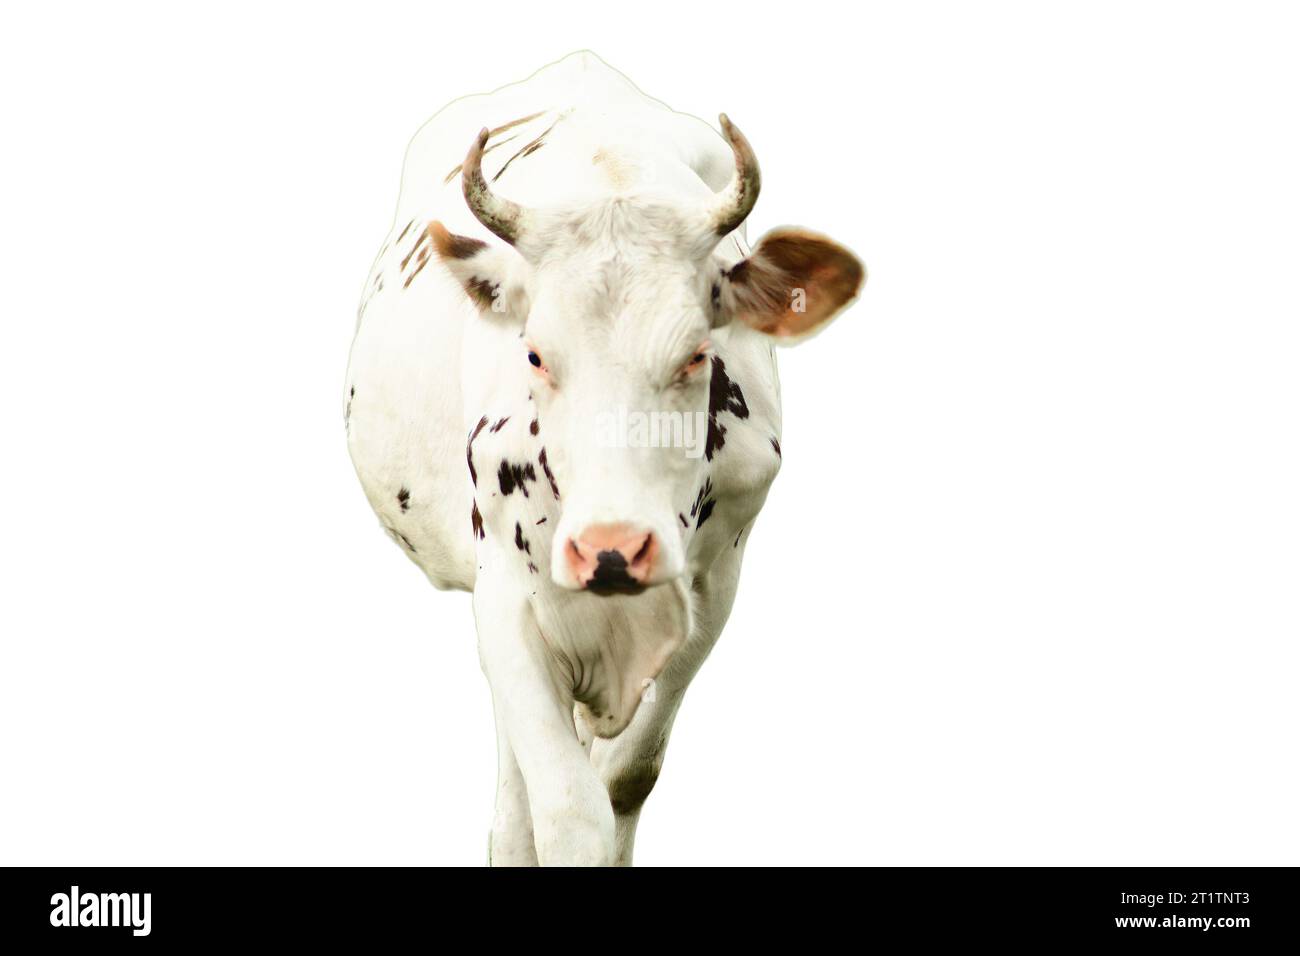 Le mucche, mammiferi dolci e docili, trovano appagamento nel semplice piacere di pascolare sull'erba abbondante, isolata su sfondo bianco. Foto Stock